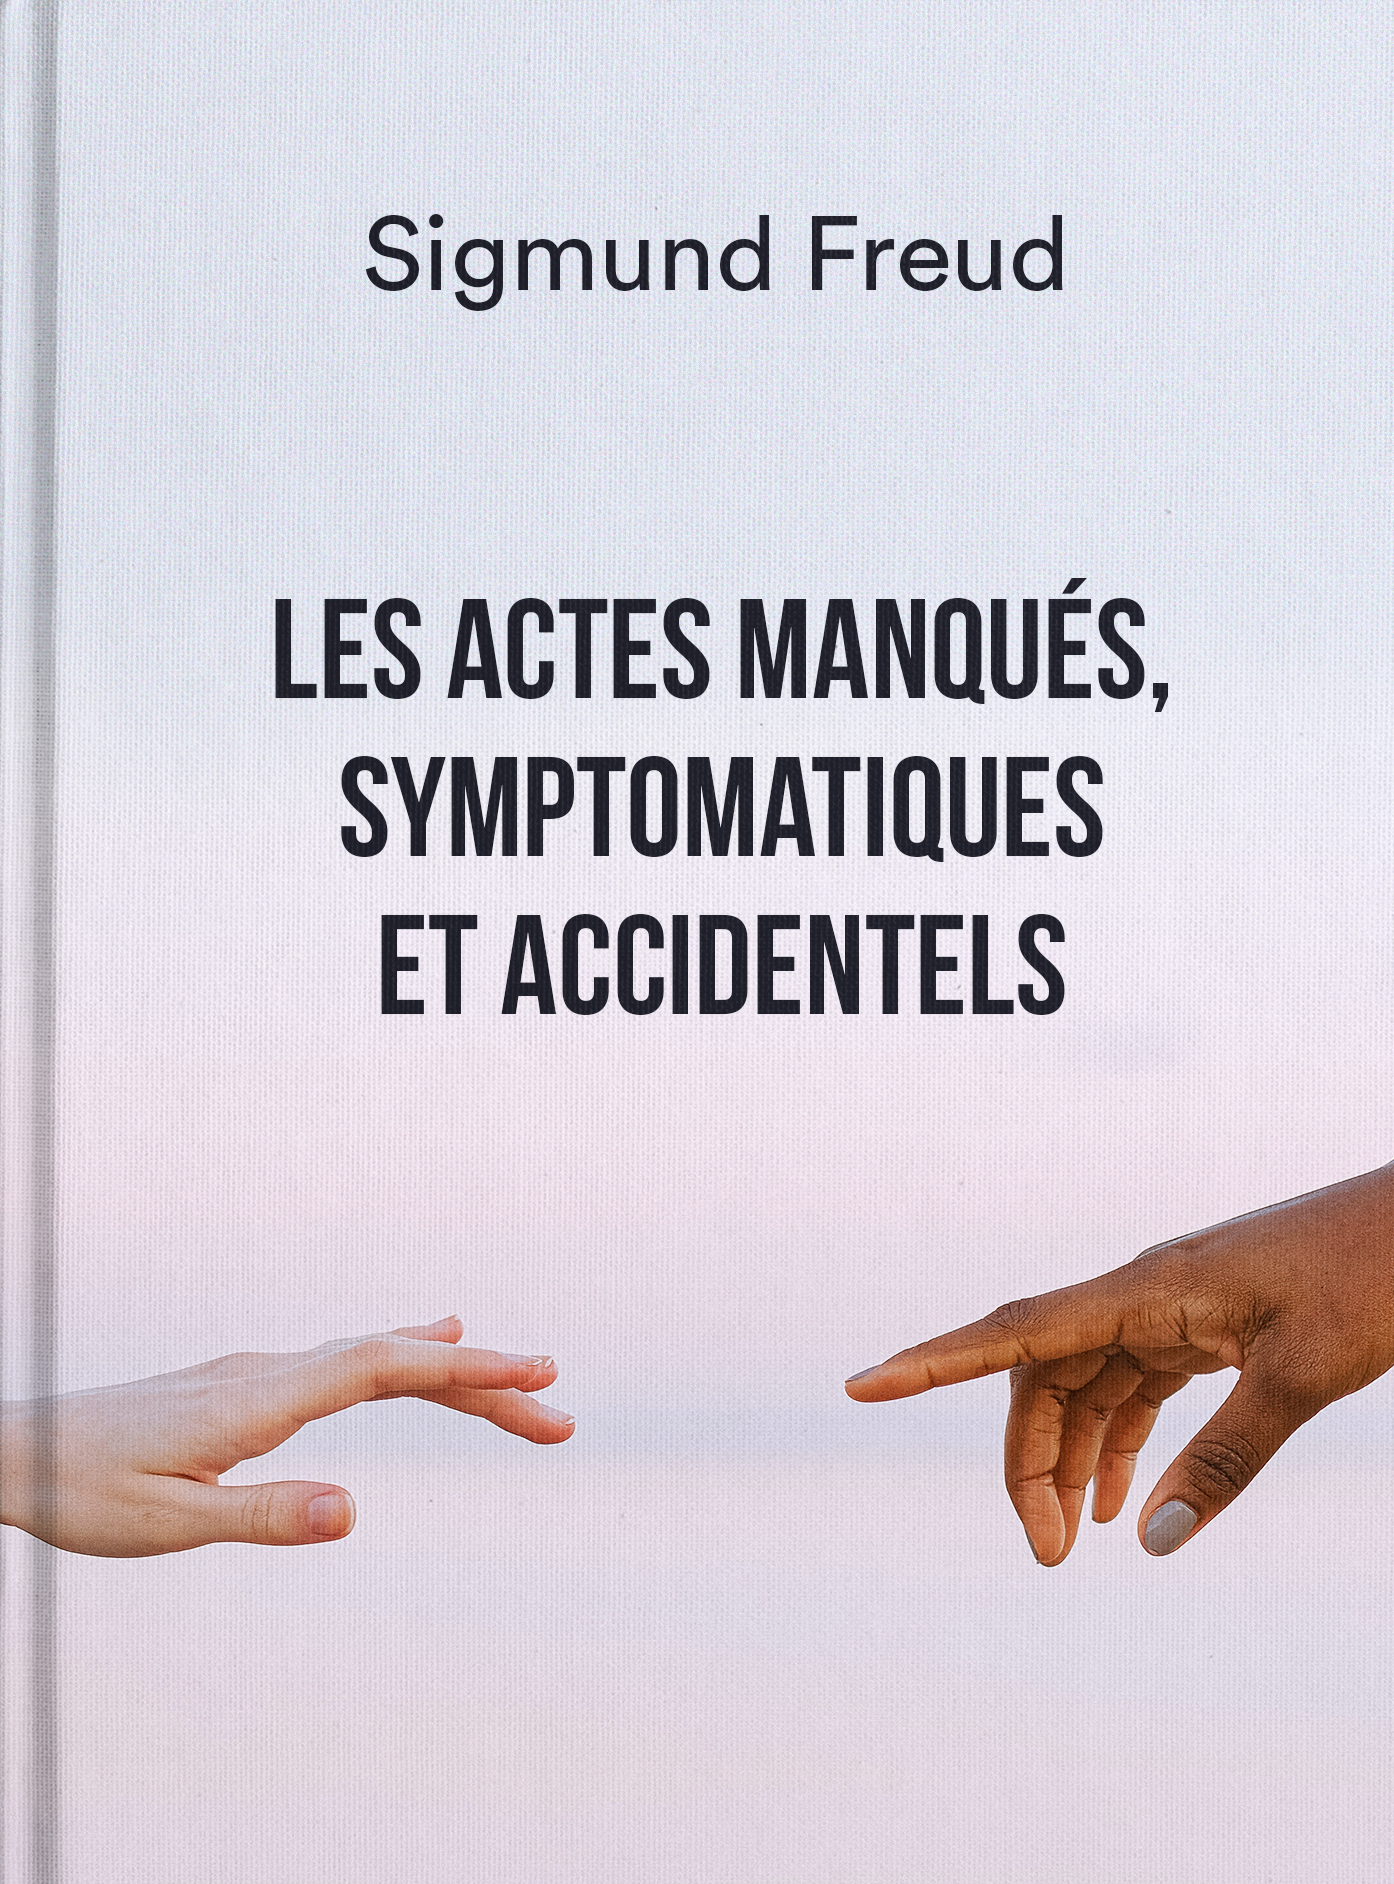 Les actes manqués, symptomatiques et accidentels - Sigmund Freud